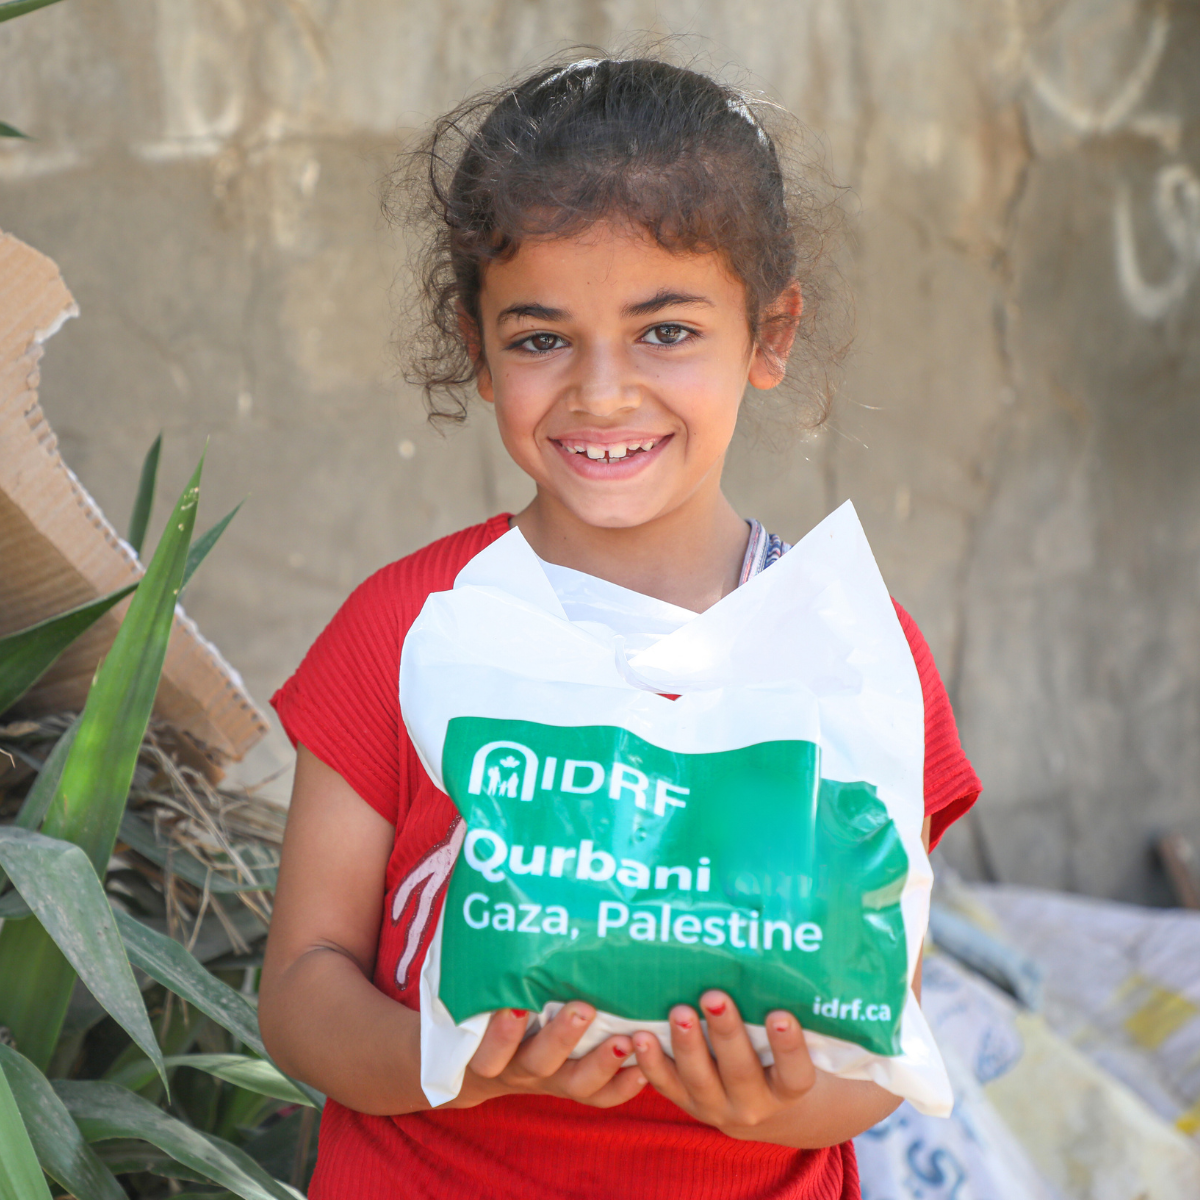 Cliquer ici pour obtenir plus d'informations sur Qurbani en Palestine